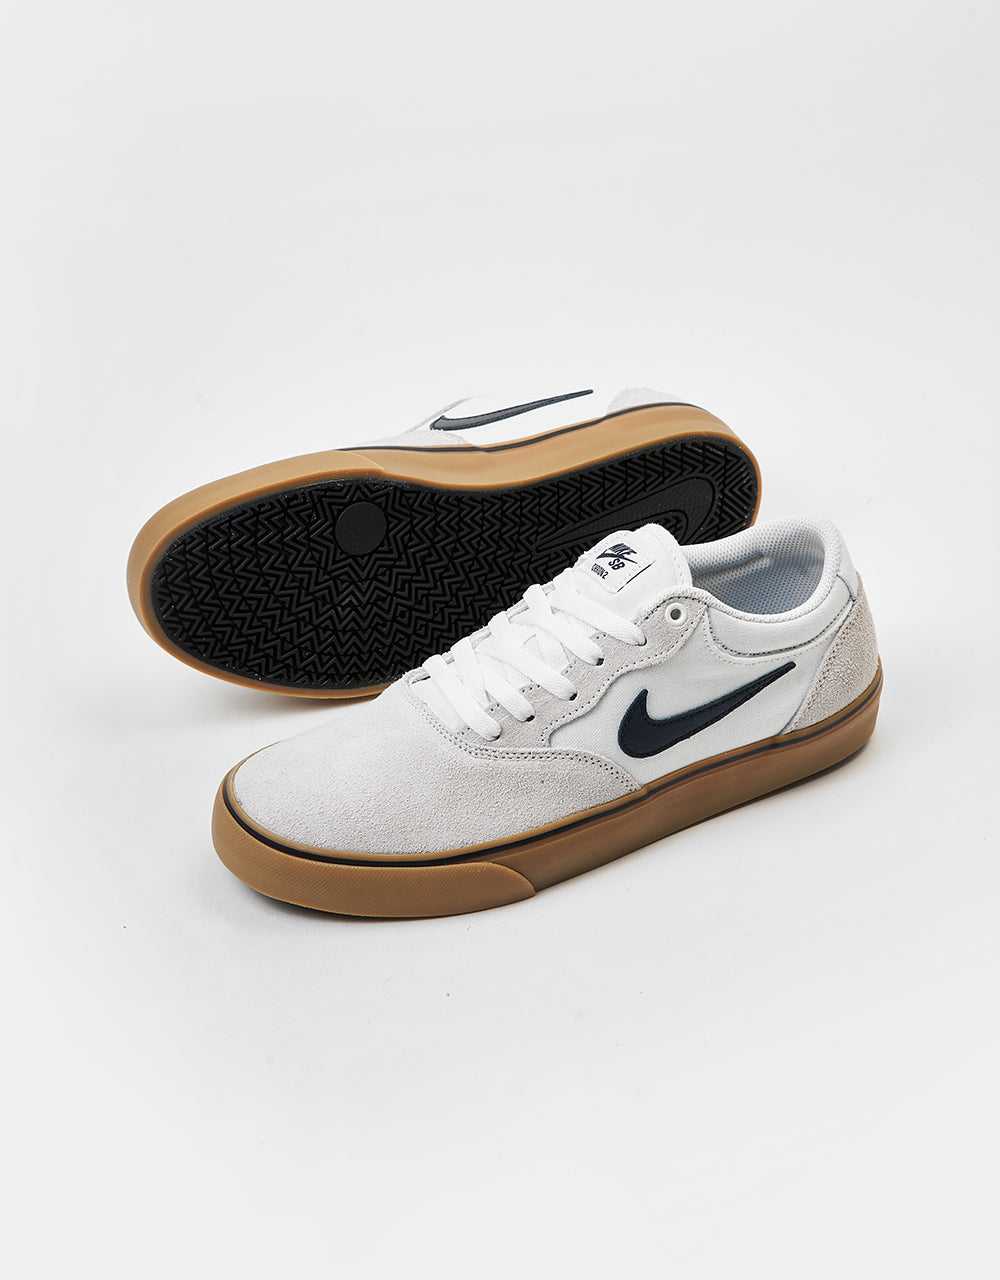 Nike SB Chron 2 Skate Shoes - White/Obsidian-White-Gum Lt Brown-Black